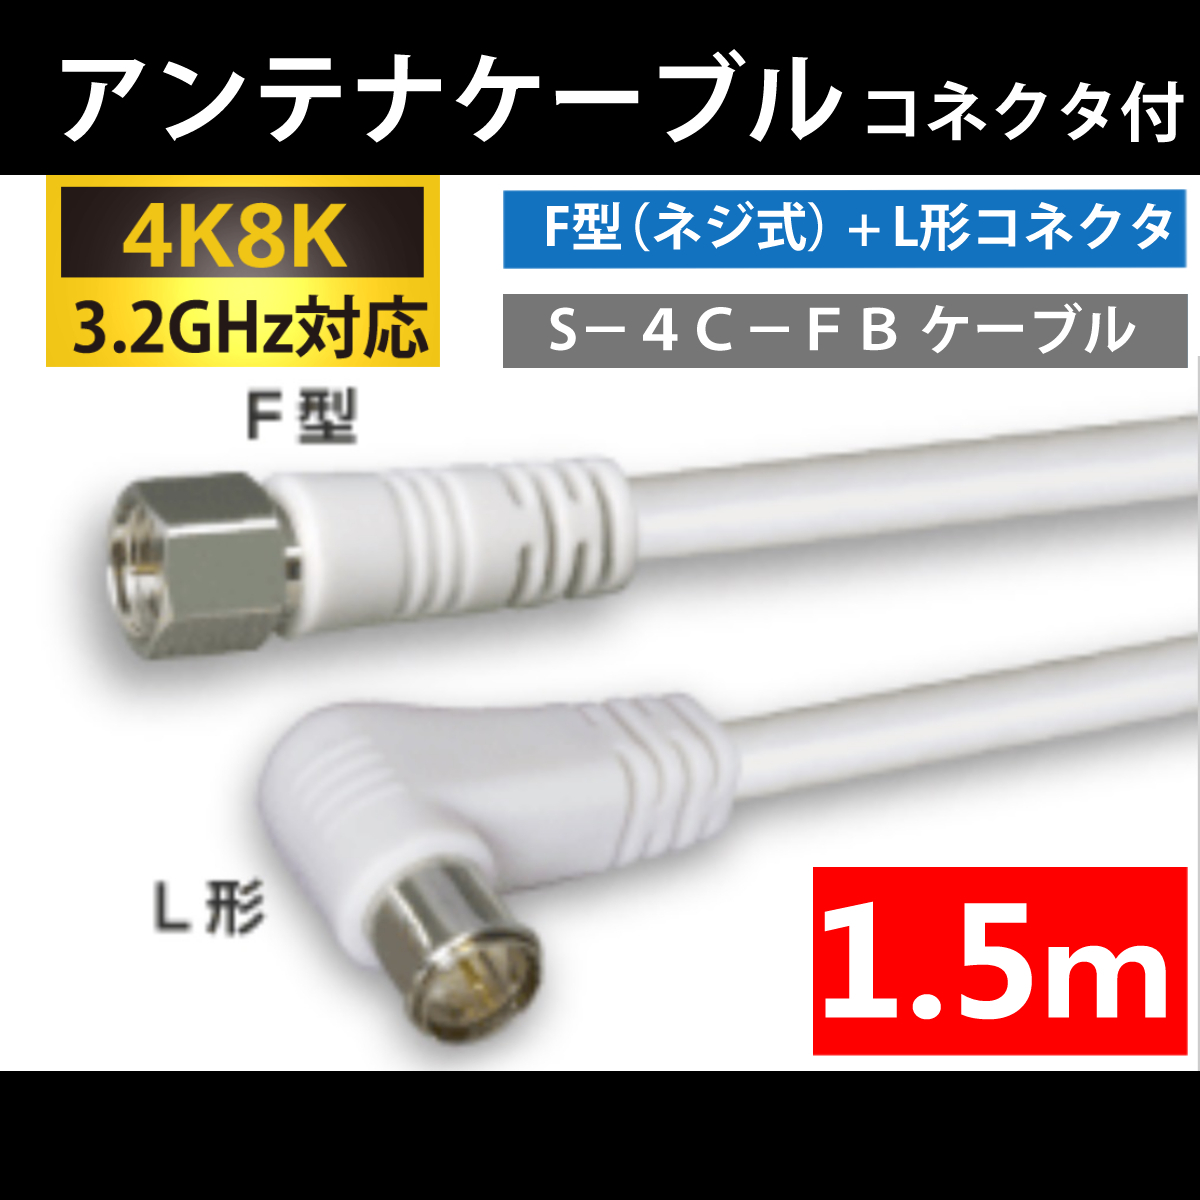 【送料無料】 4K8K対応 / アンテナケーブル 1.5m / F型 + L型 プラグ / 4C同軸ケーブル_画像1